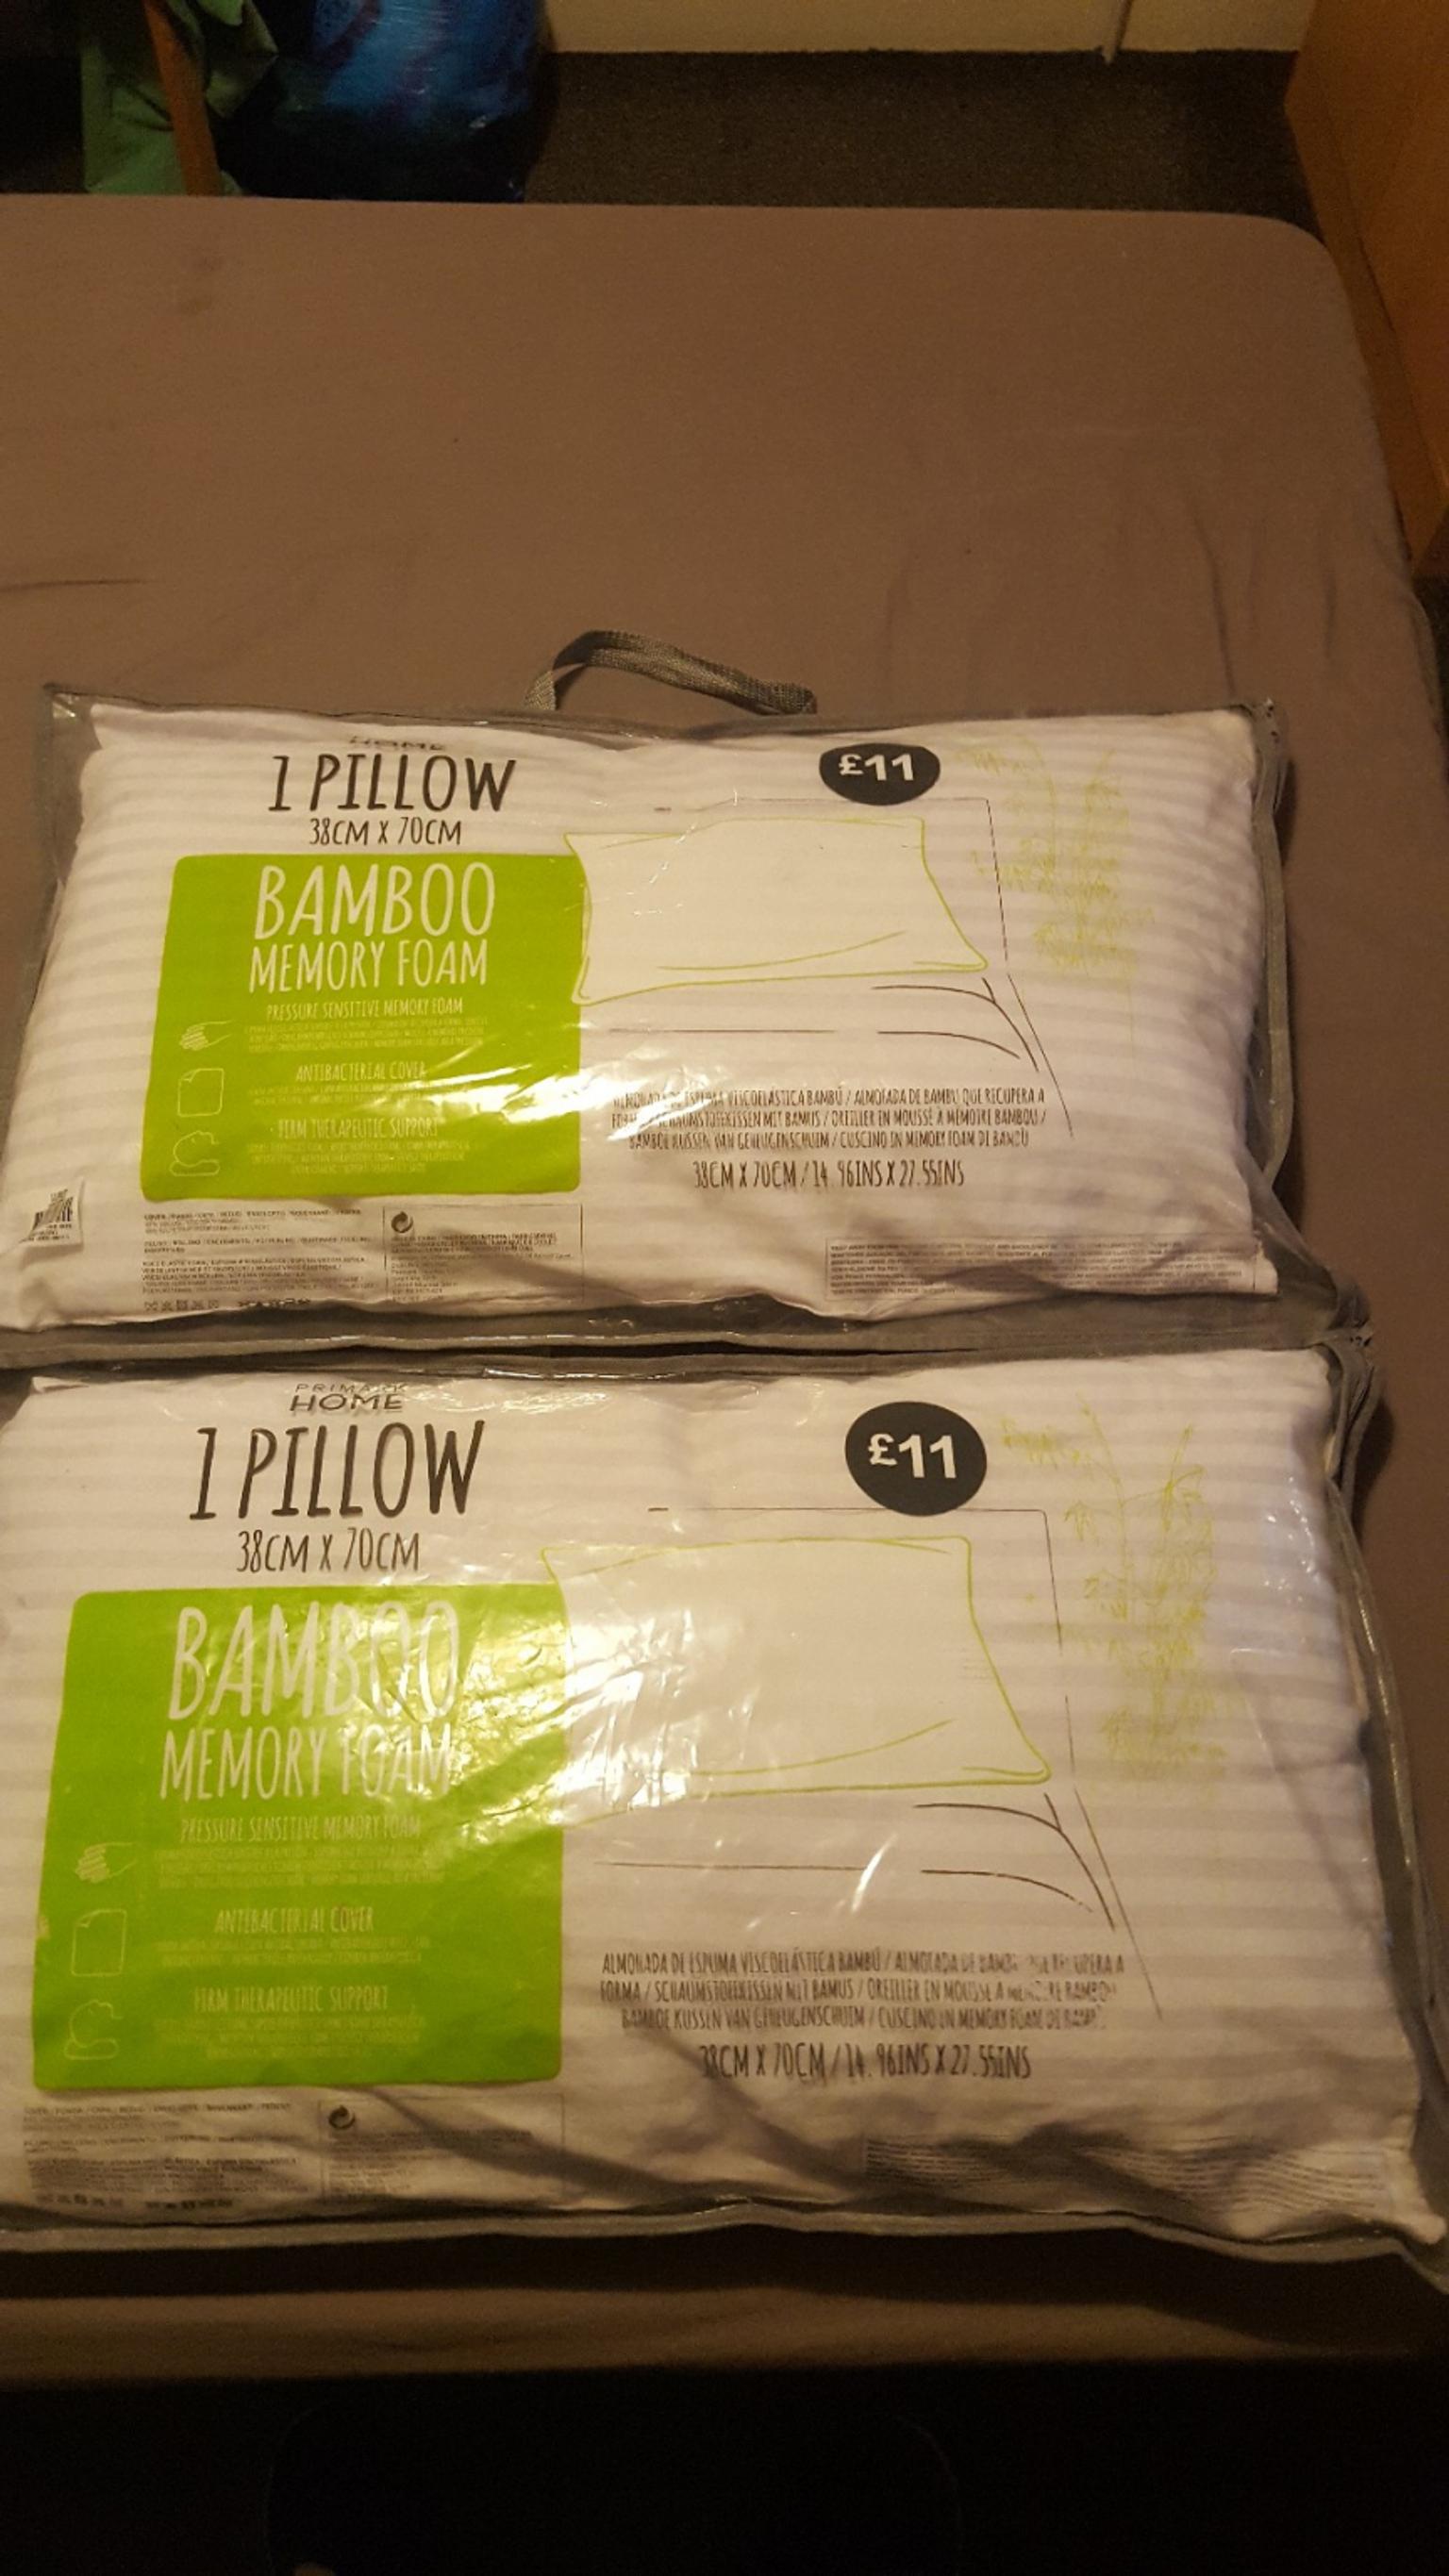 Primark memory foam pillow review